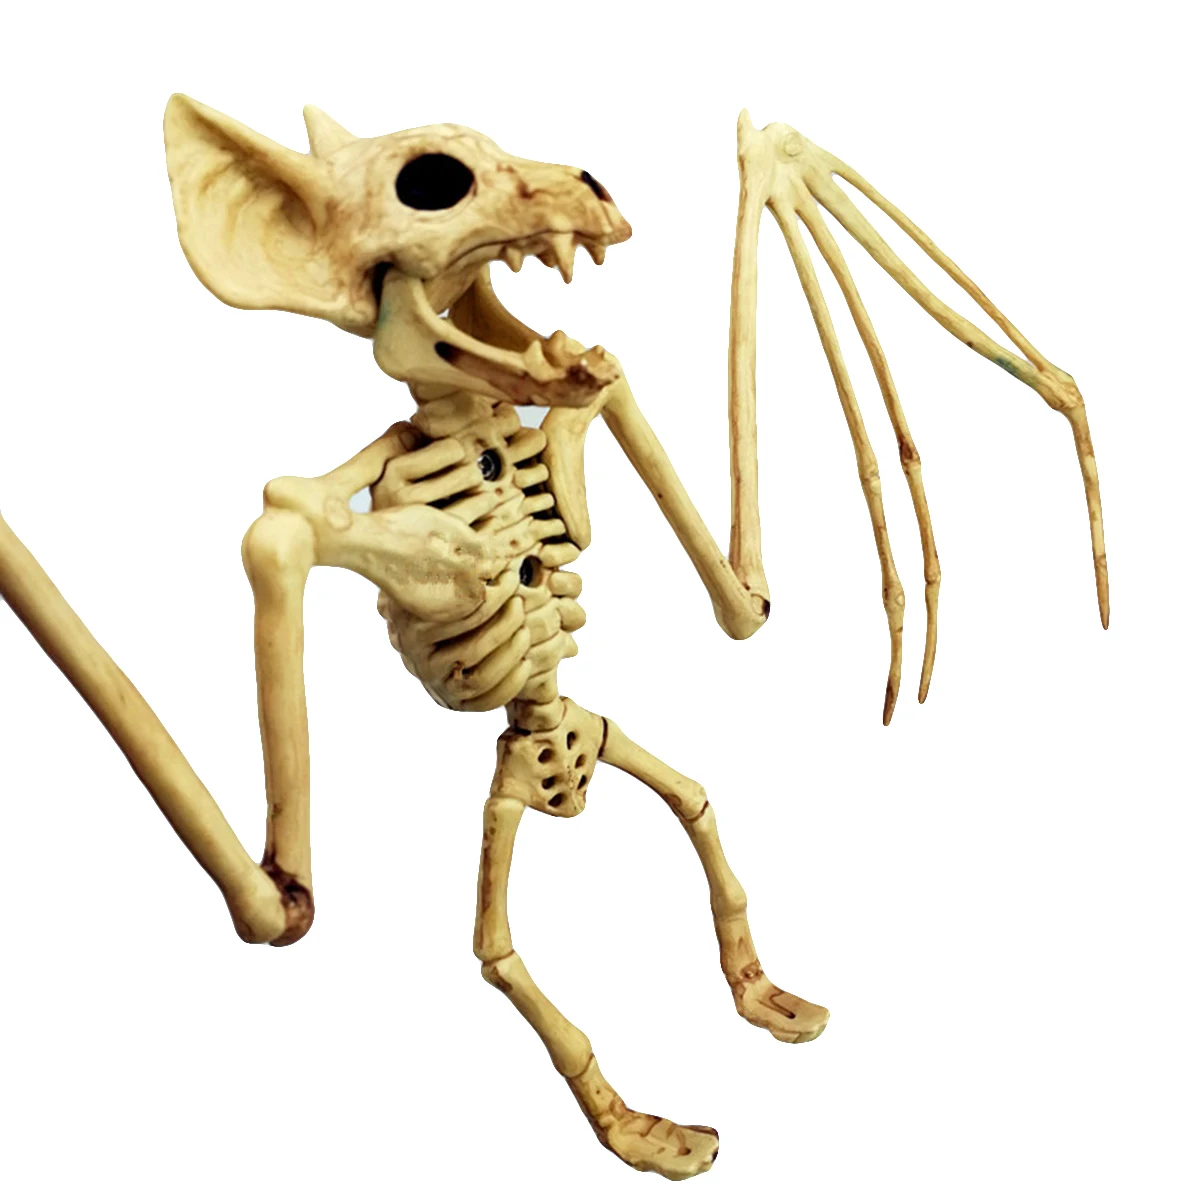 Украшение для Хэллоуина скорпион паук мышь скелет Хэллоуин ужас Животное украшение реквизит Хэллоуин украшение Скелет Вечерние